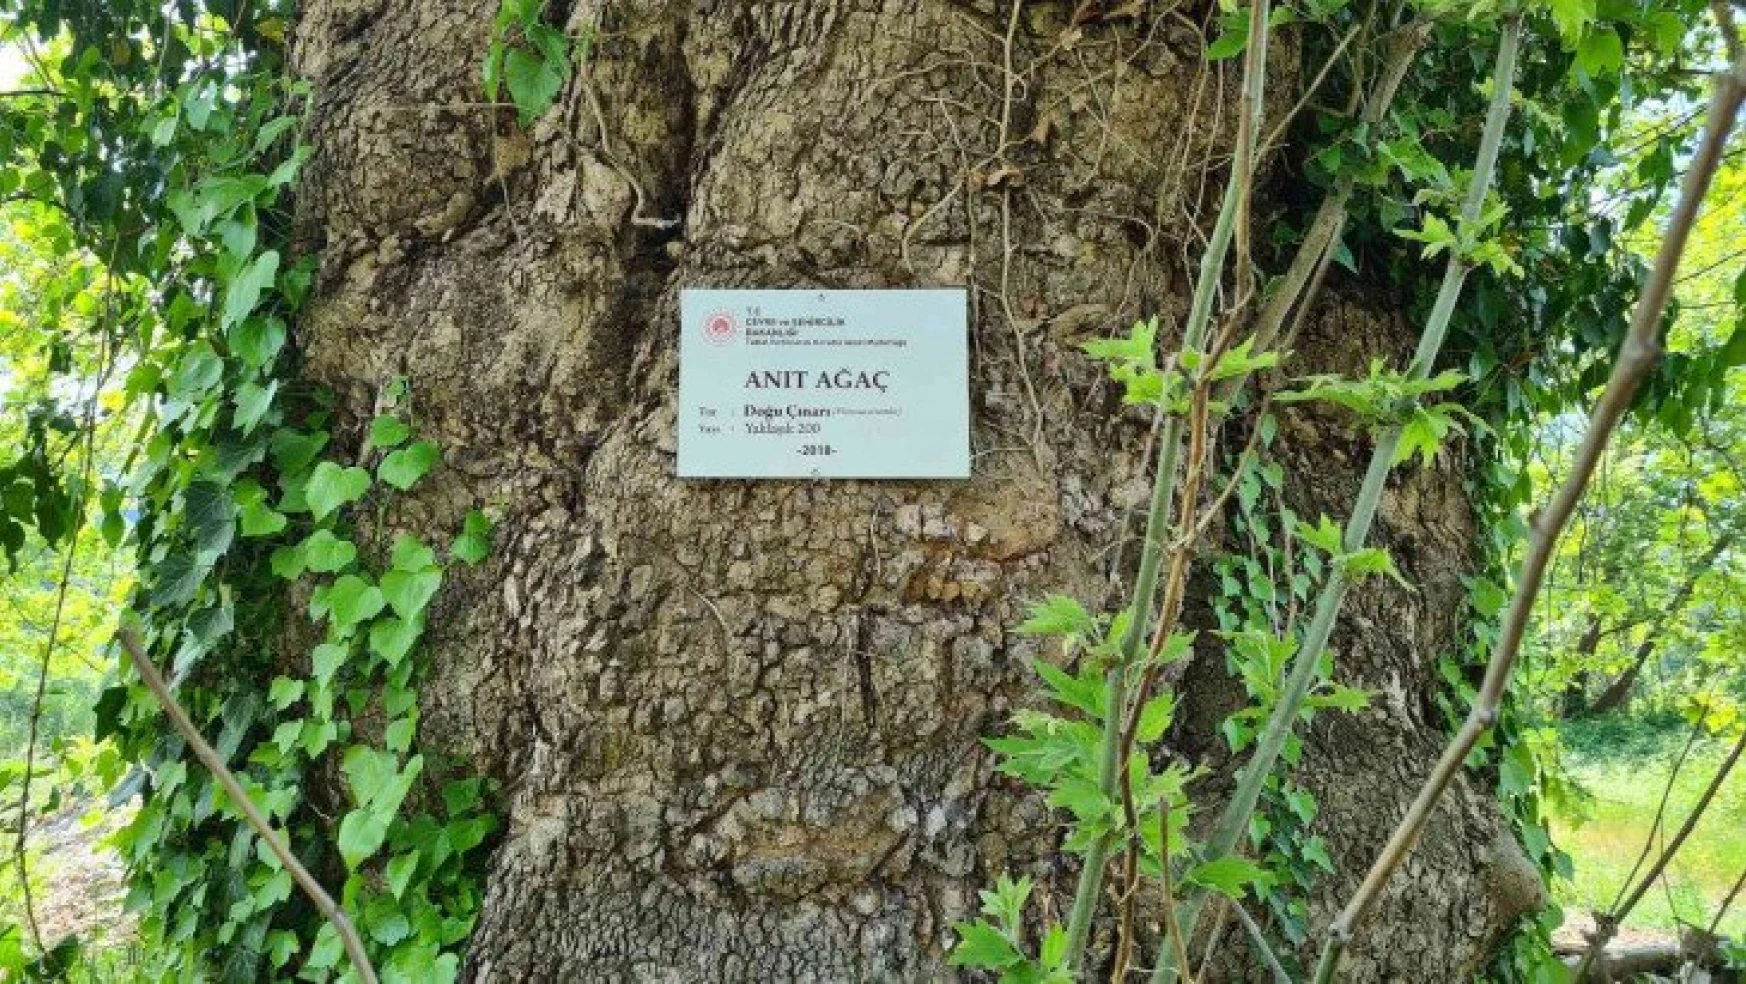 300 yıllık çınar ağaç, 'anıt ağaç' olarak tescillendi